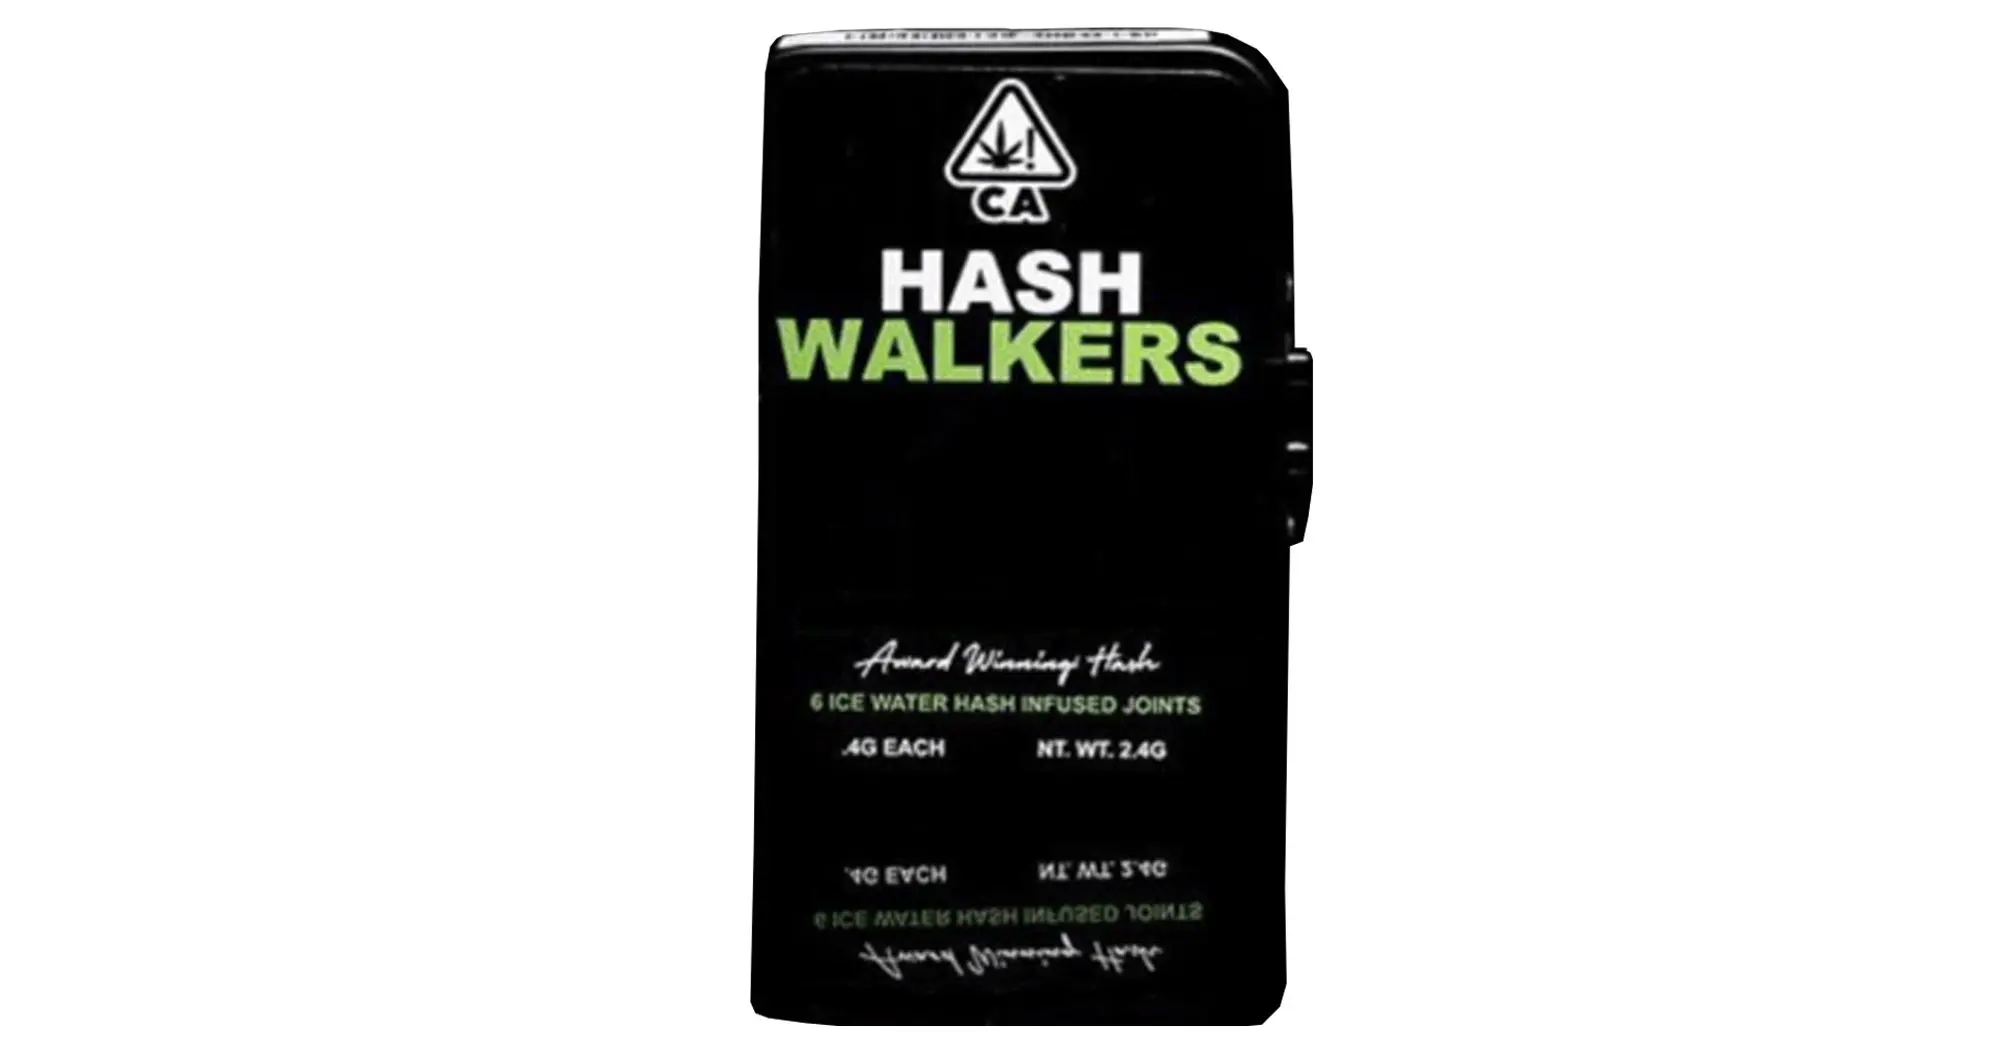 Legend OG x 91 Octane Hash Walkers Infused Pre-Roll Pack